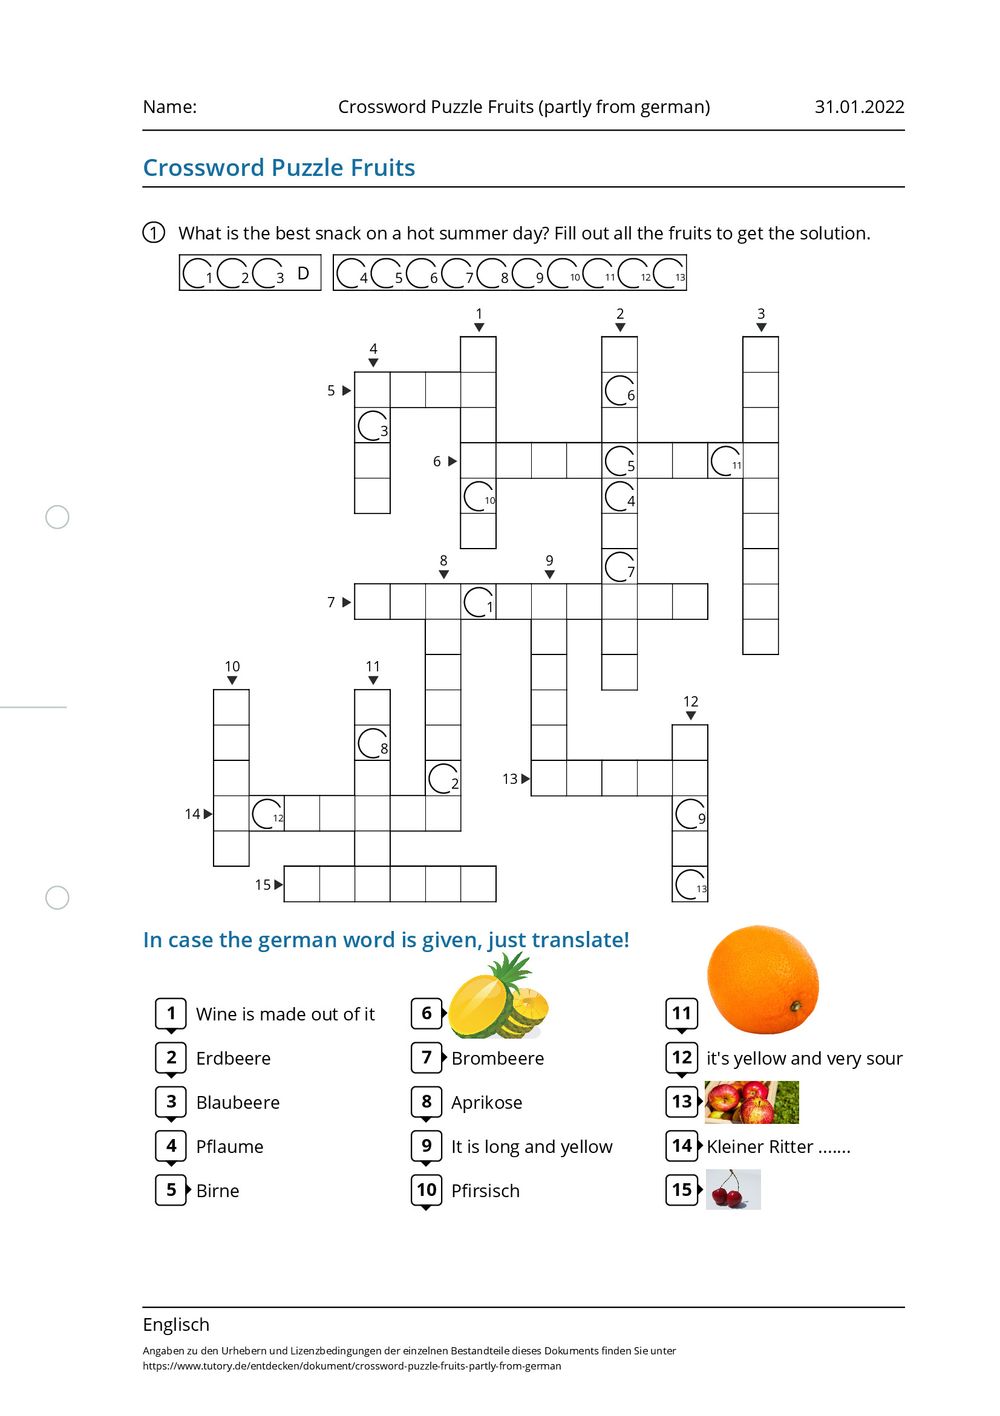 arbeitsblatt-crossword-puzzle-fruits-partly-from-german-englisch-tutory-de